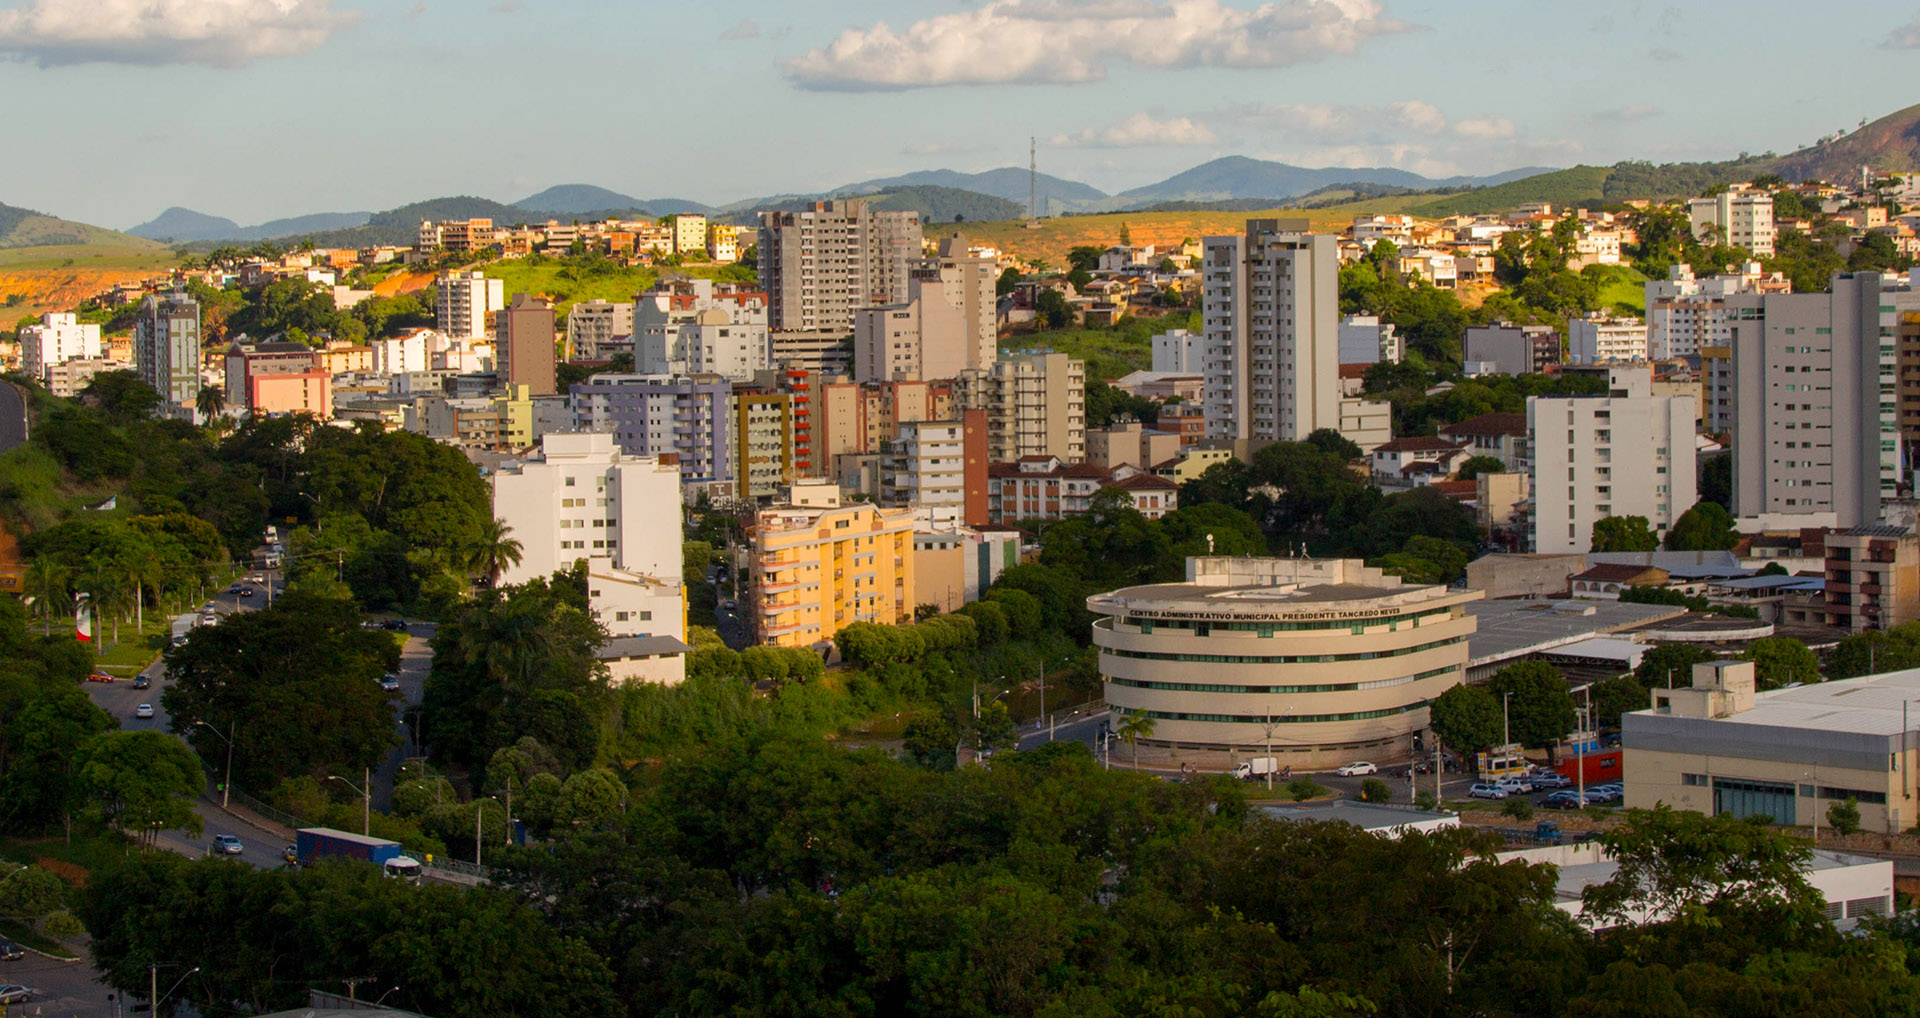 Cultura e o entretenimento eclético movimentam Santa Catarina